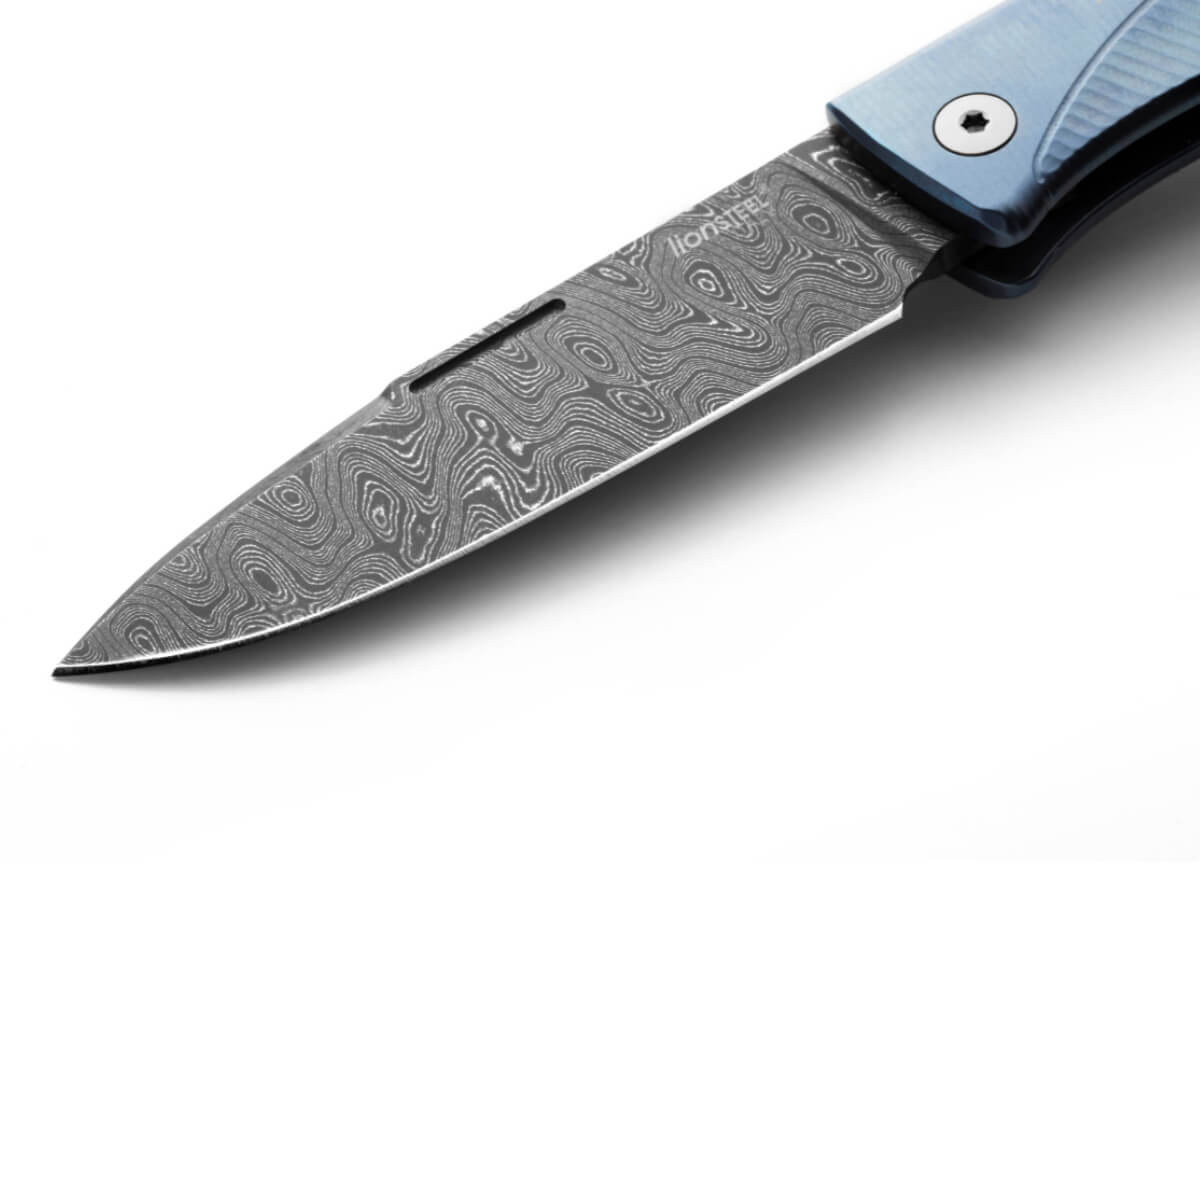 LionSteel Thrill Scrambled Damascus Steel Blade